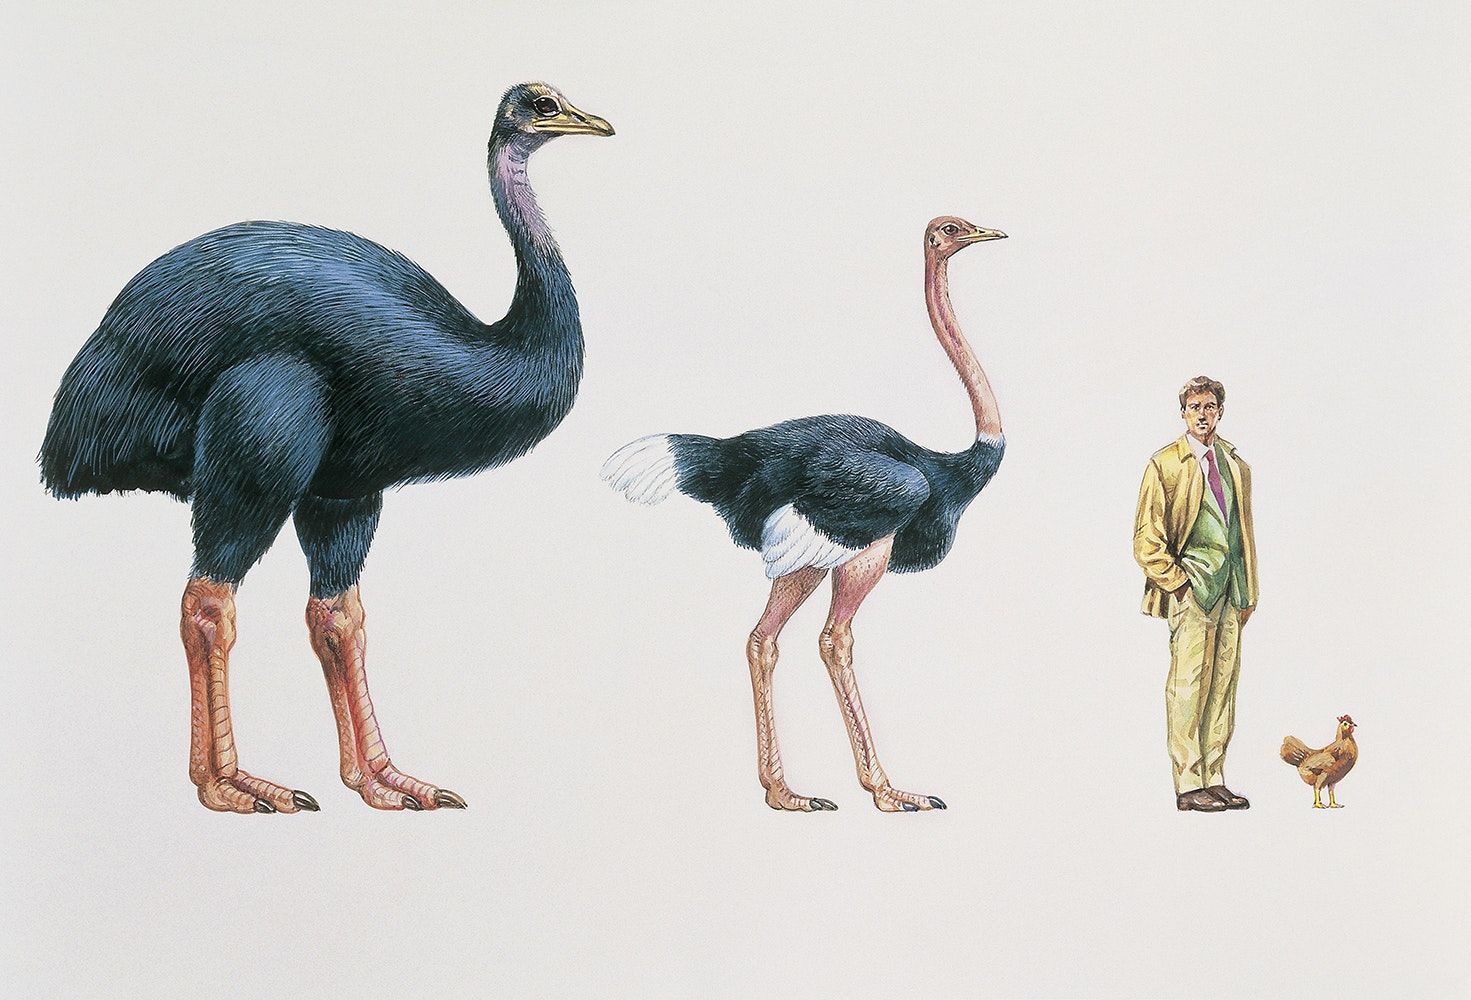 世界最大鸟有多大？高3米，蛋是普通150倍，还是被捕食灭绝